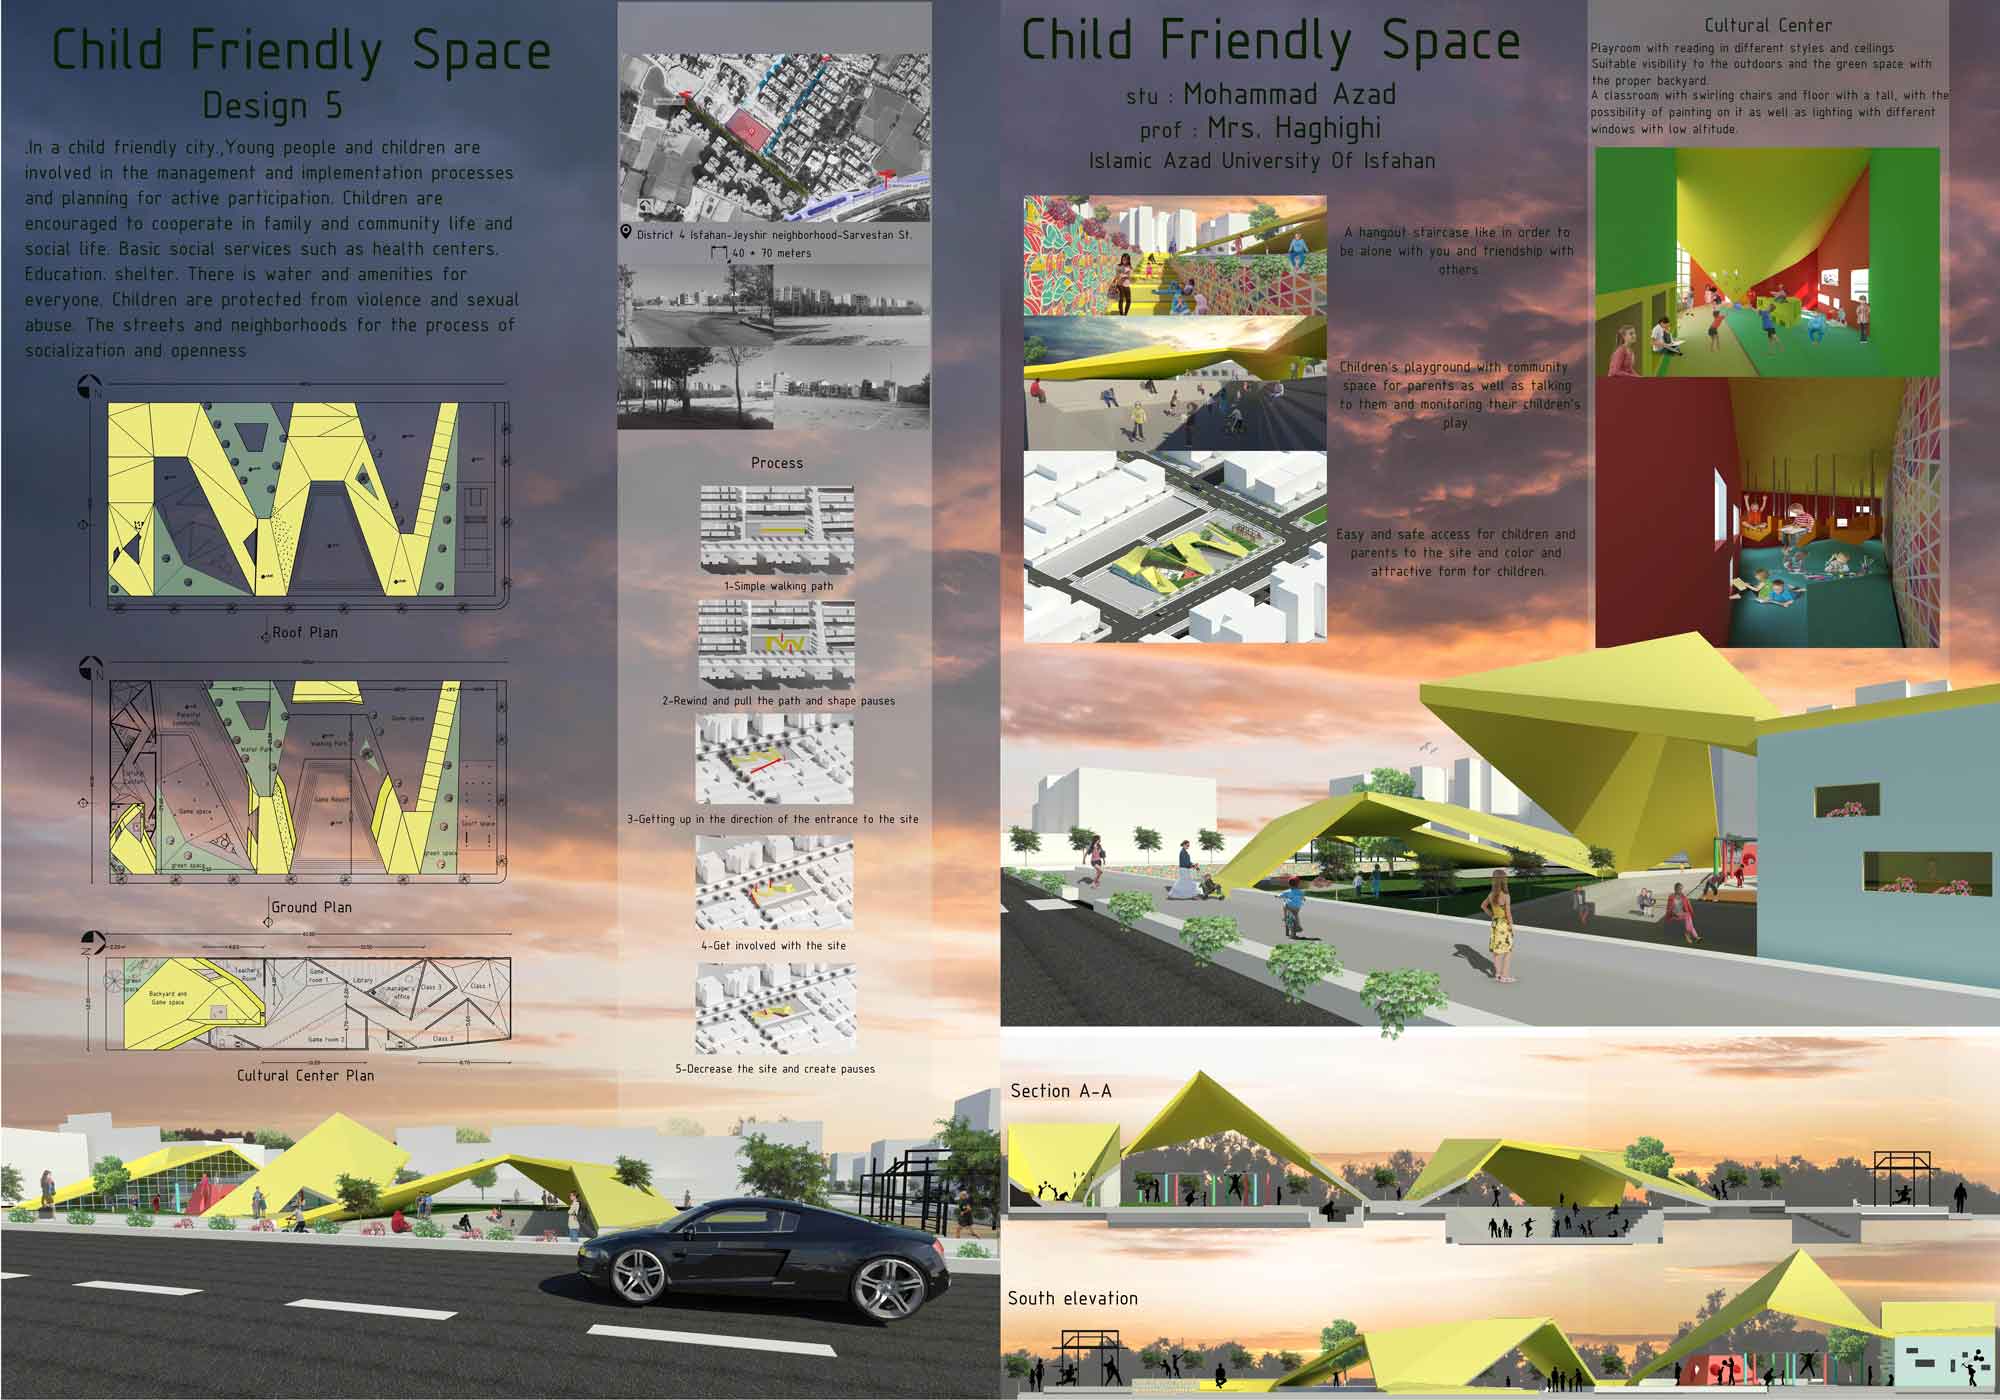 طراحی فضای جمعی با رویکرد دوستدار کودک - 2